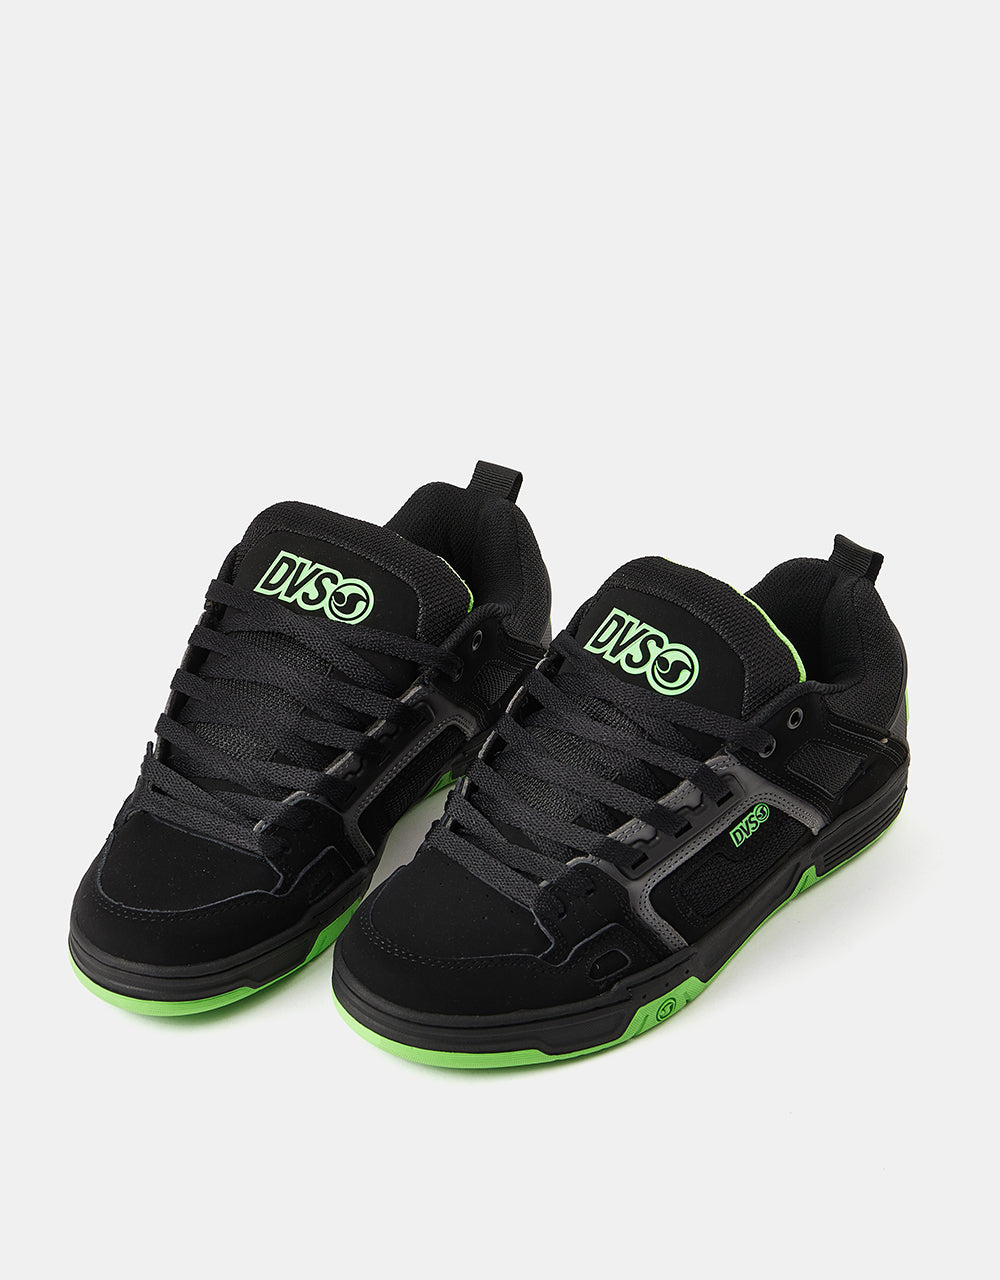 DVS Comanche Skate Shoes - Black/Charcoal/Lime Nubuck